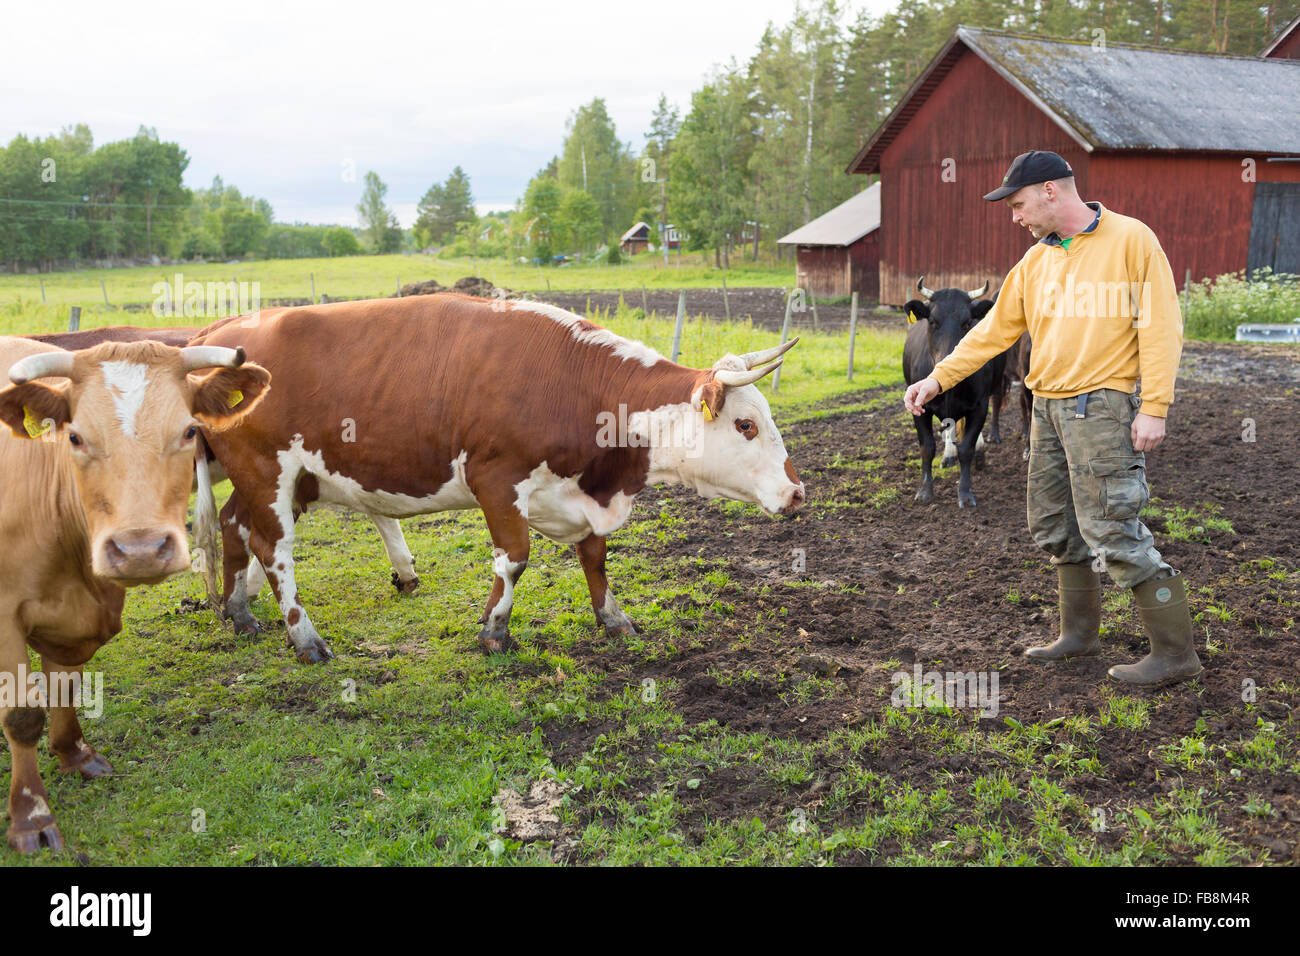 La Suède, l'océan, Grytgol, agriculteur avec des vaches outdoor Banque D'Images